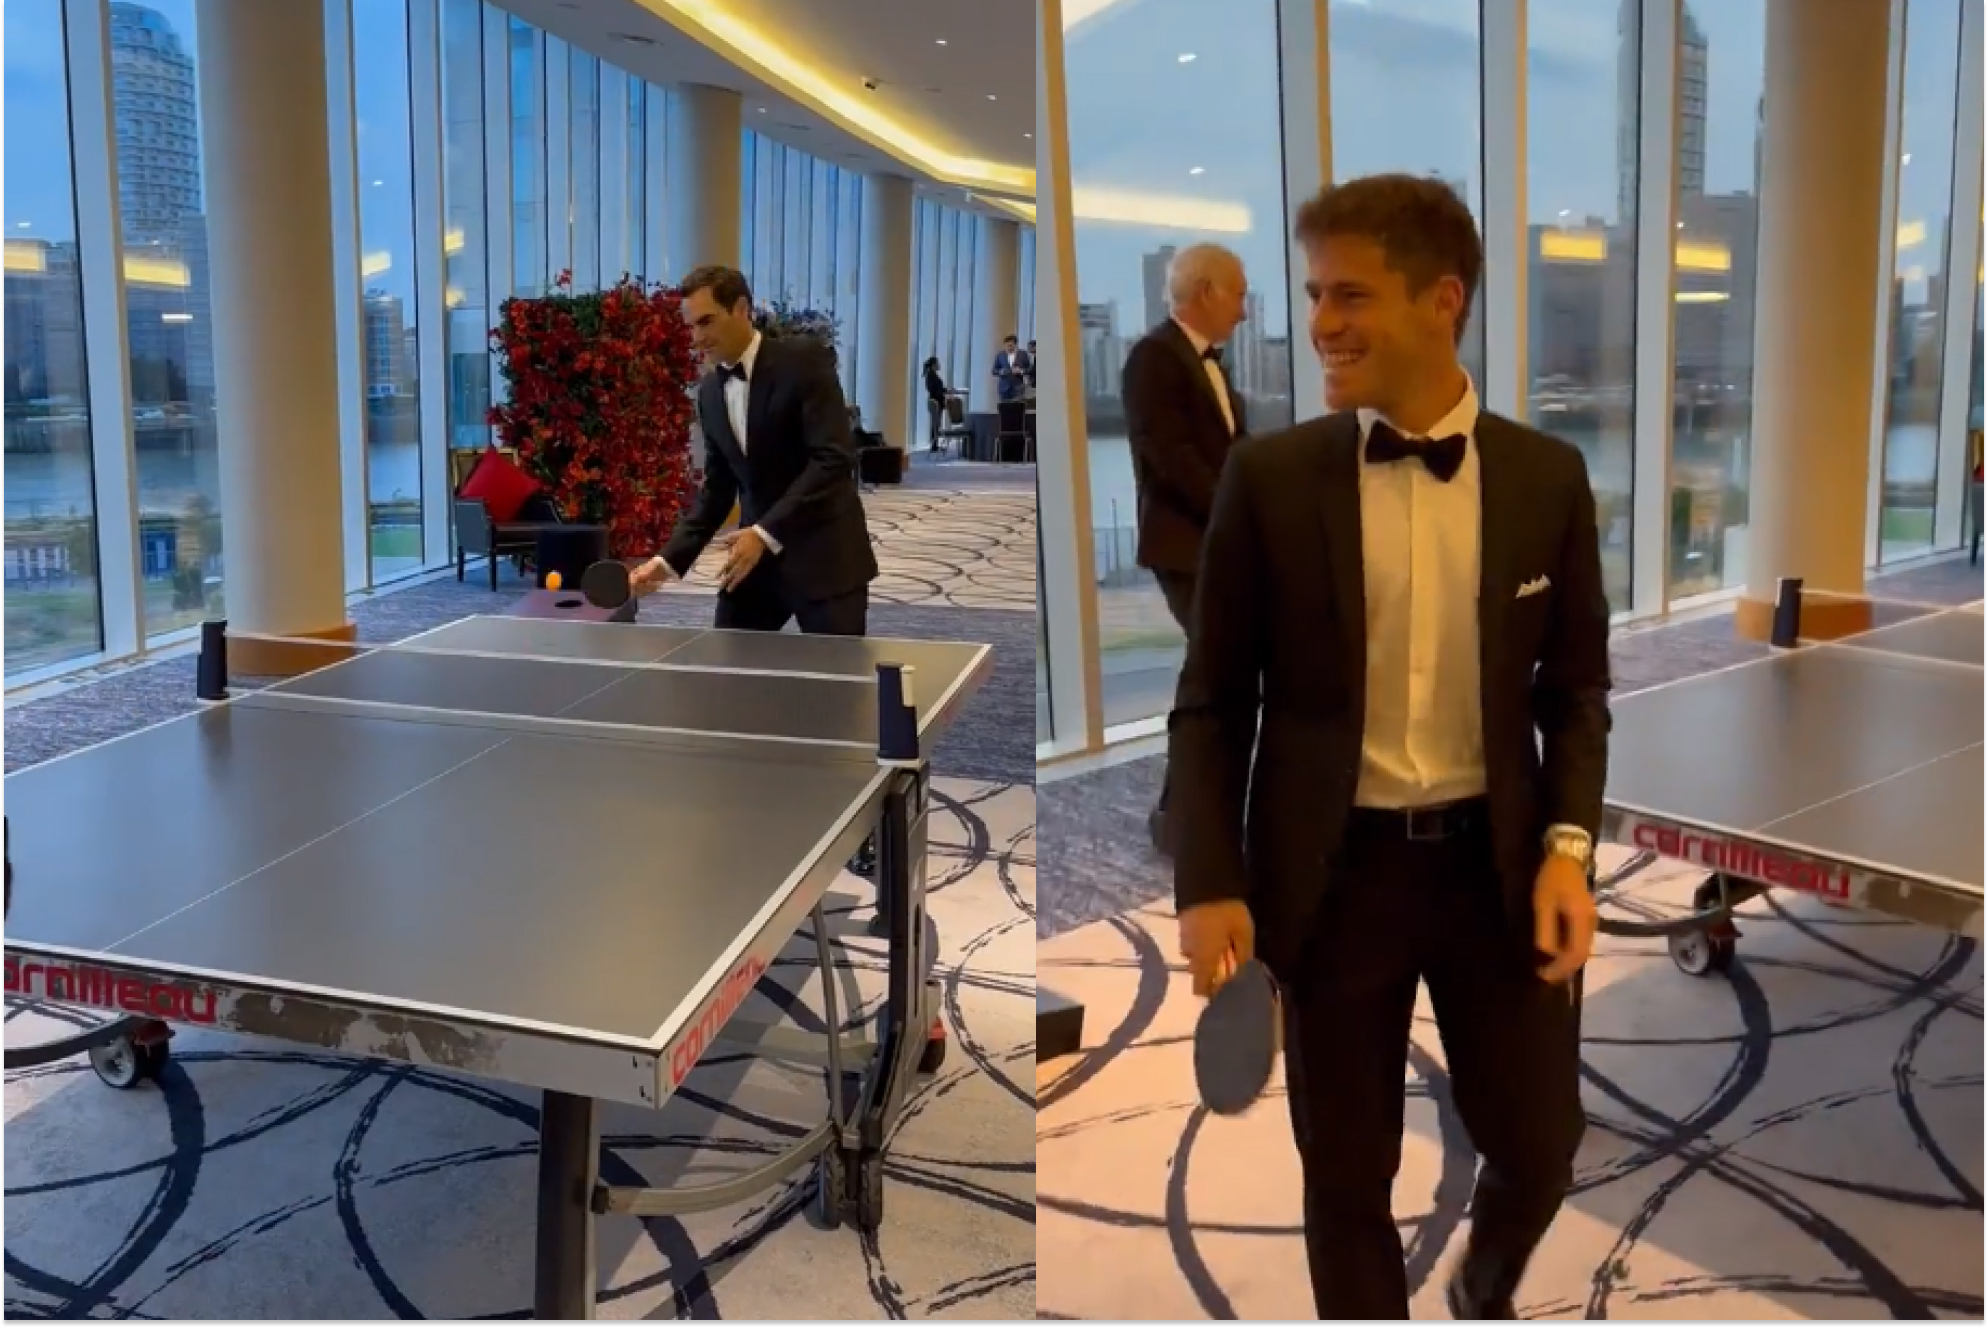 Y si Federer se pasa al tenis de mesa? Roger tiene clase para todo...